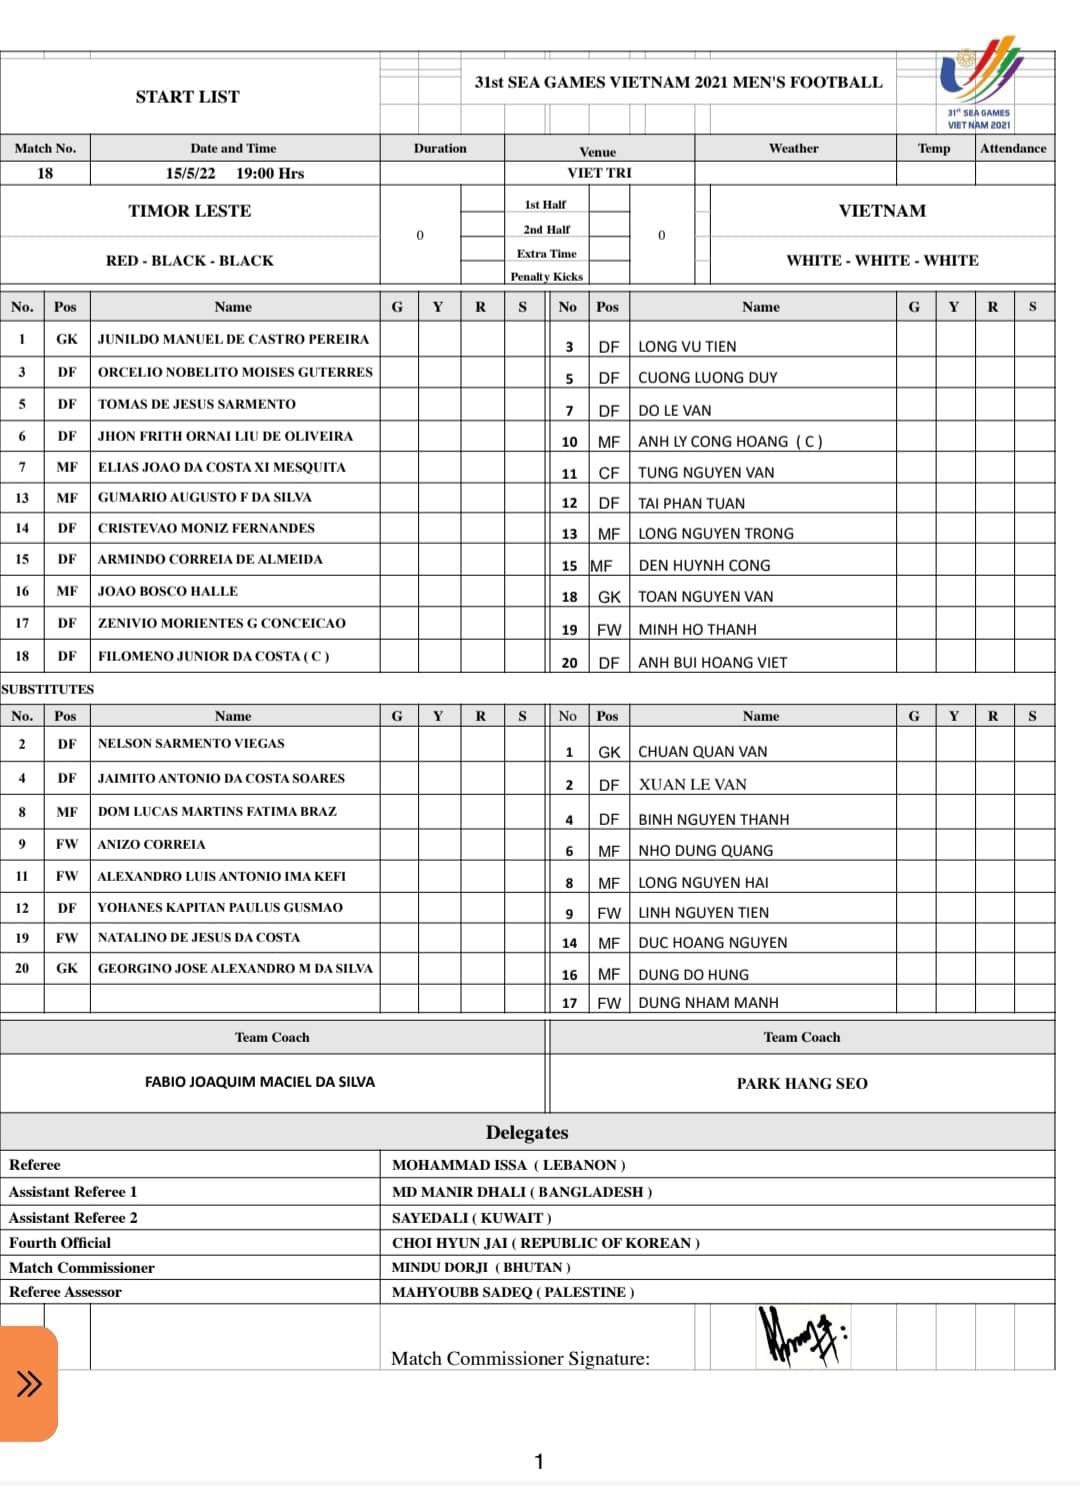 Thắng nhẹ nhàng U23 Timor Leste 2-0, U23 Việt Nam vào bán kết với vị trí nhất bảng - Ảnh 12.